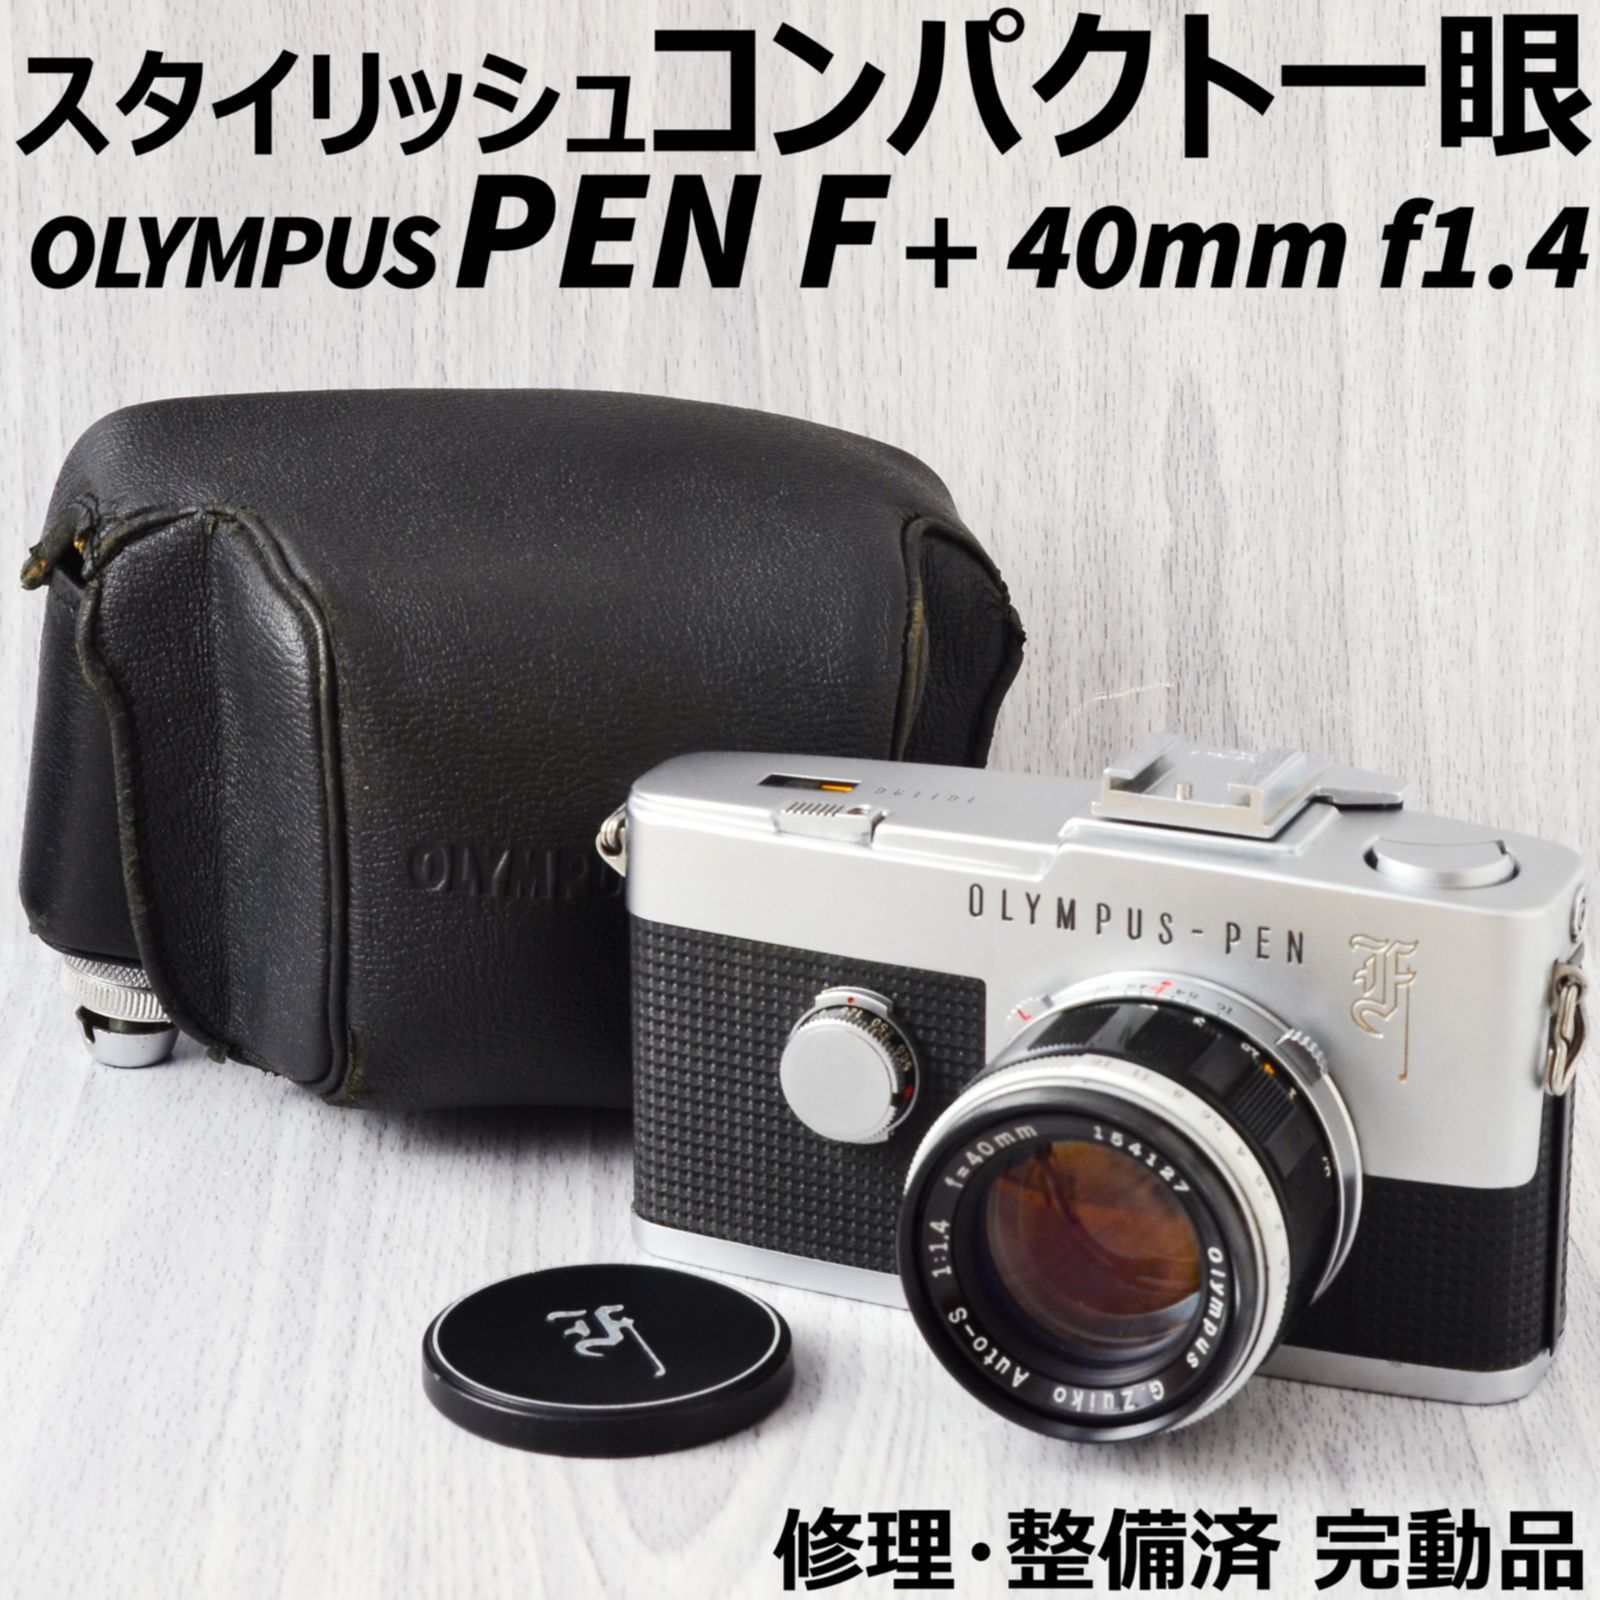 美品! OLYMPUS PEN F + 40mm f1.4 ケース付 修理整備済 - メルカリ